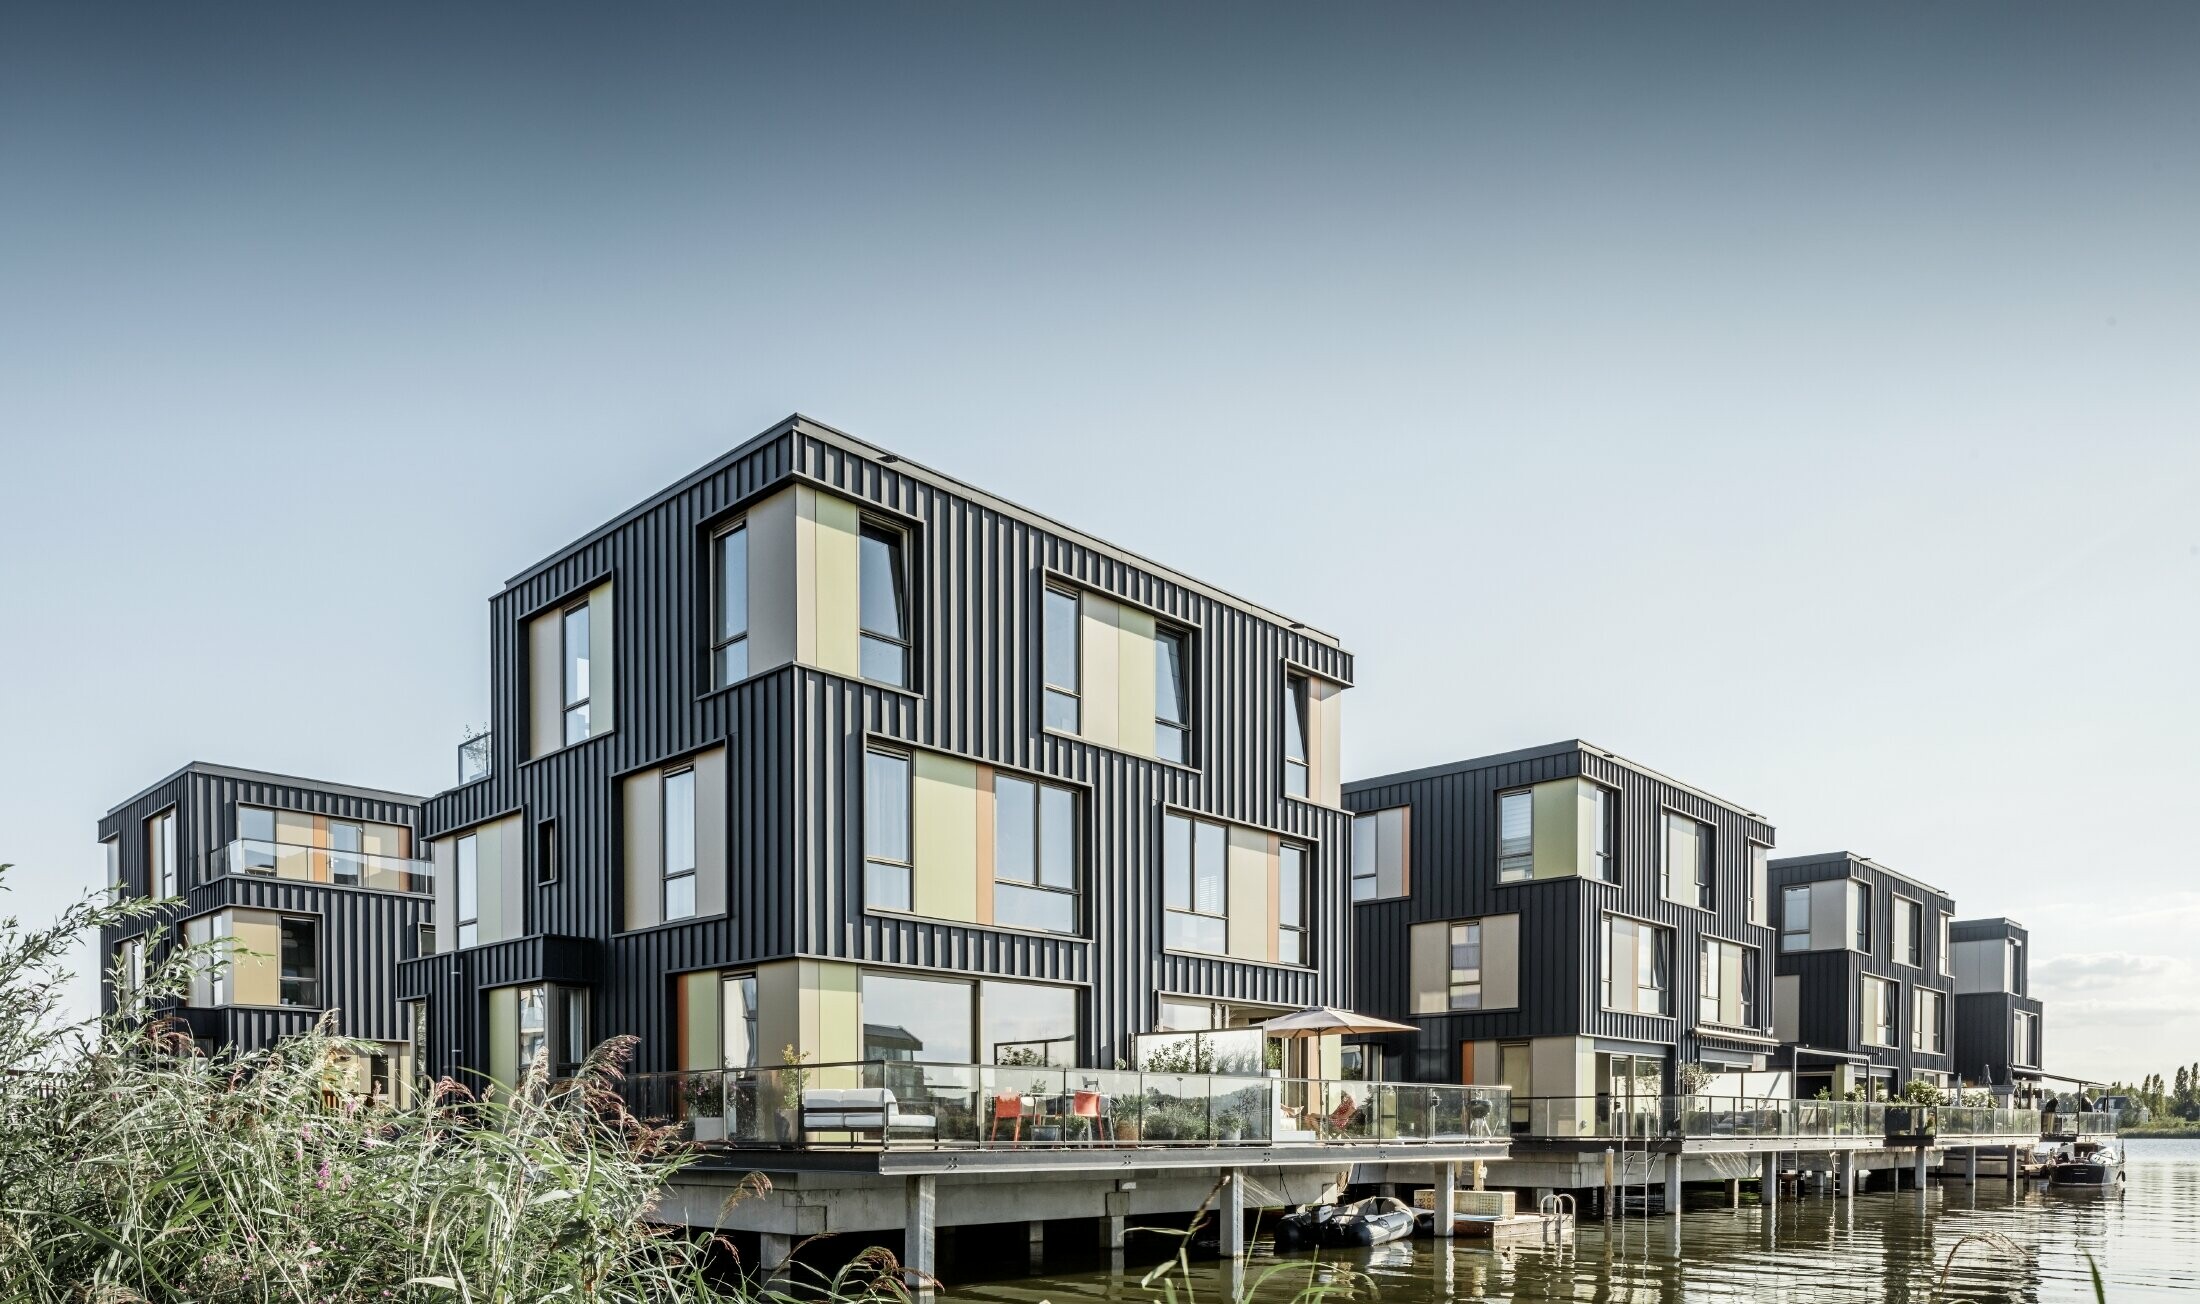 Nouveau parc résidentiel avec maisons à deux appartements sur l’eau à Amsterdam. Les maisons ont été recouvertes de Prefalz de PREFA couleur P.10 anthracite.